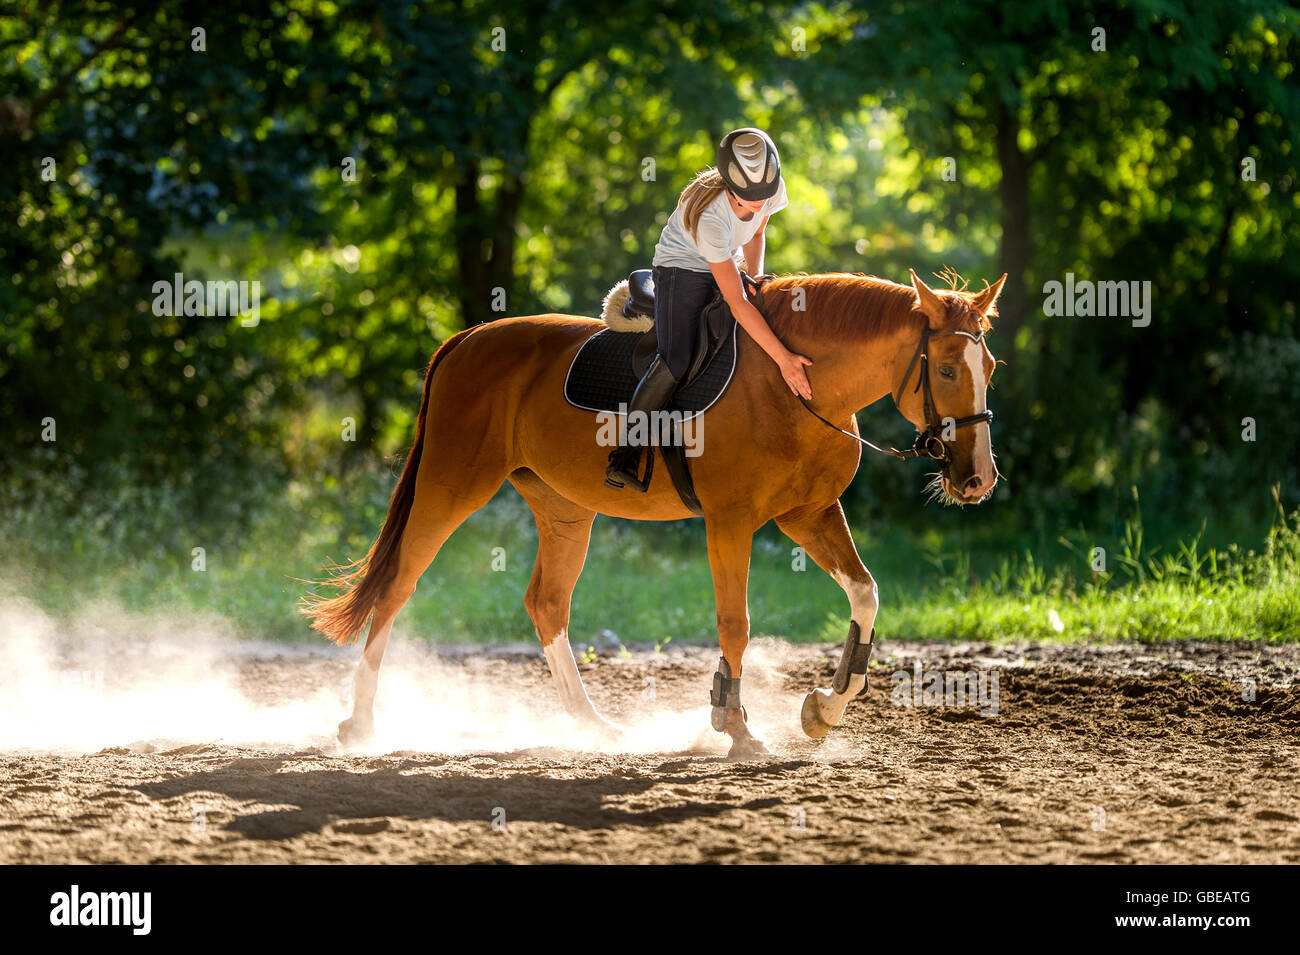 Girl riding a horse Stock Photo